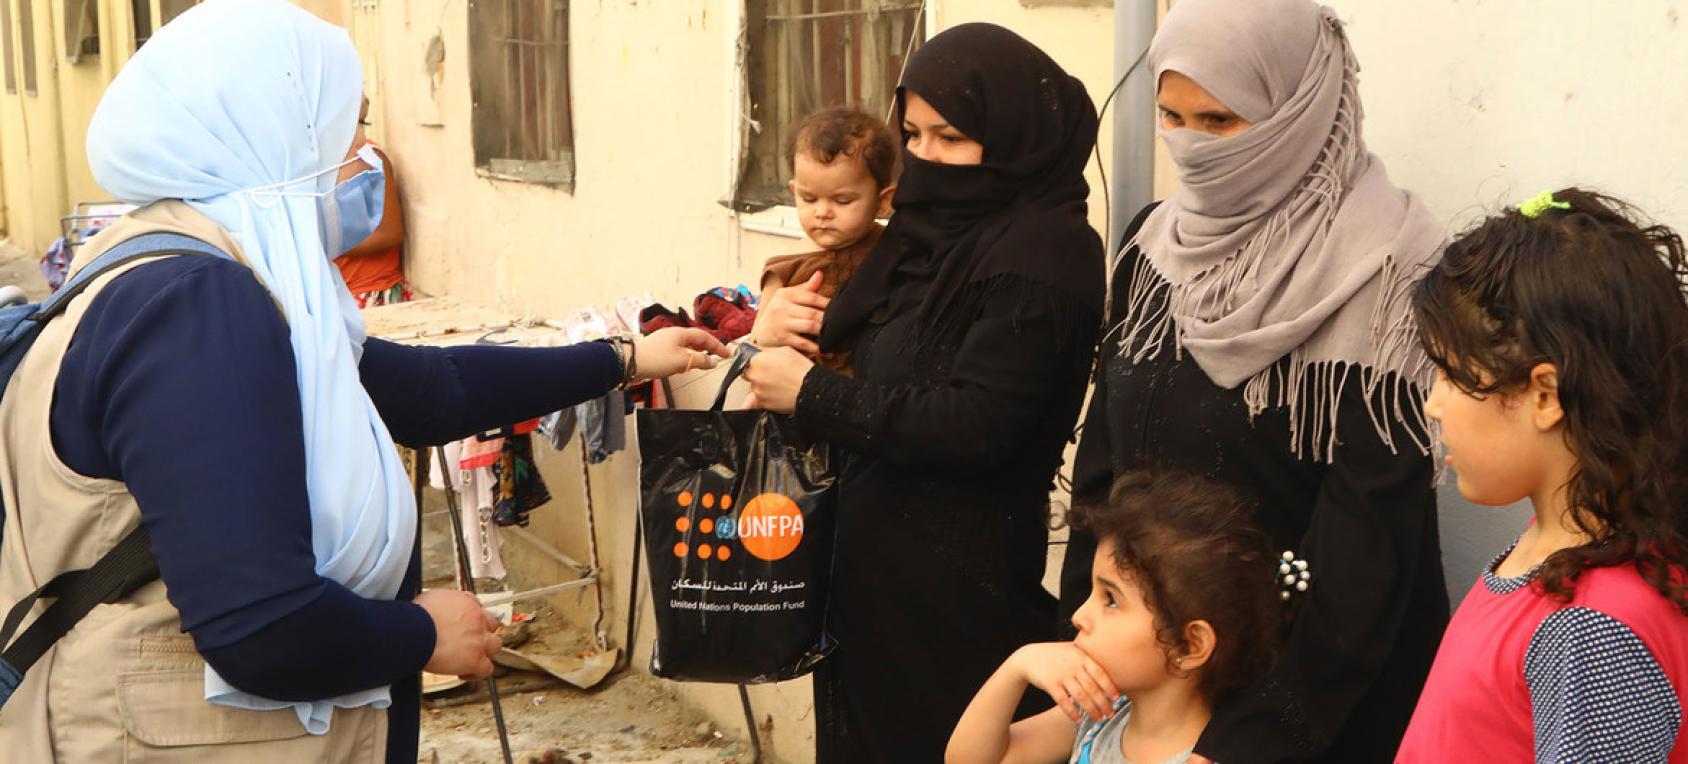 Un miembro del personal de la ONU entrega un kit en una bolsa negra a una mujer con un niño en brazos, mientras otra mujer está de pie cerca de otros dos niños.